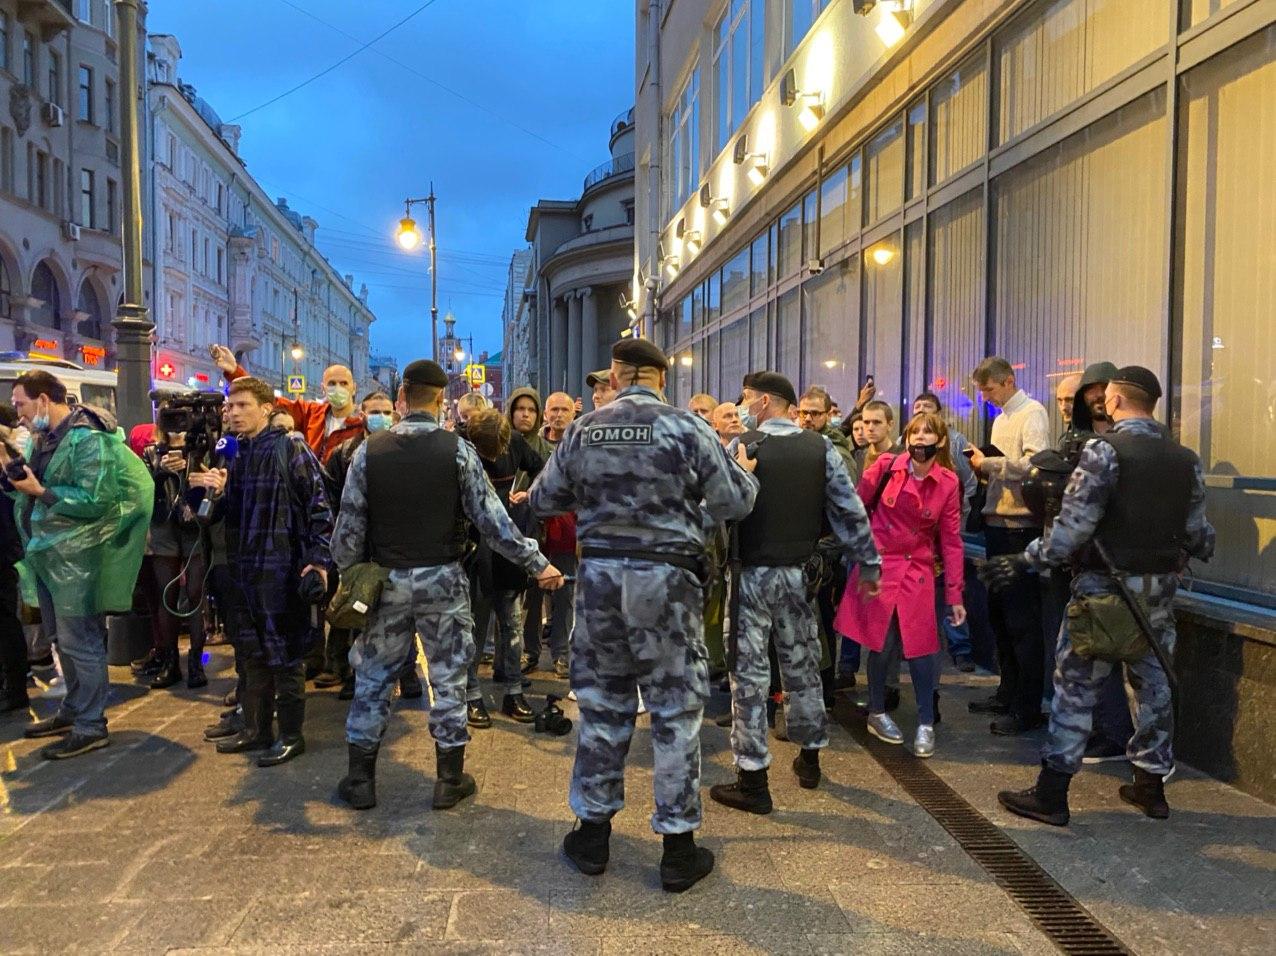 "Лови любого!" - в Москве задержаны больше 100 участников акции против "обнуления" Путина, есть травмированные